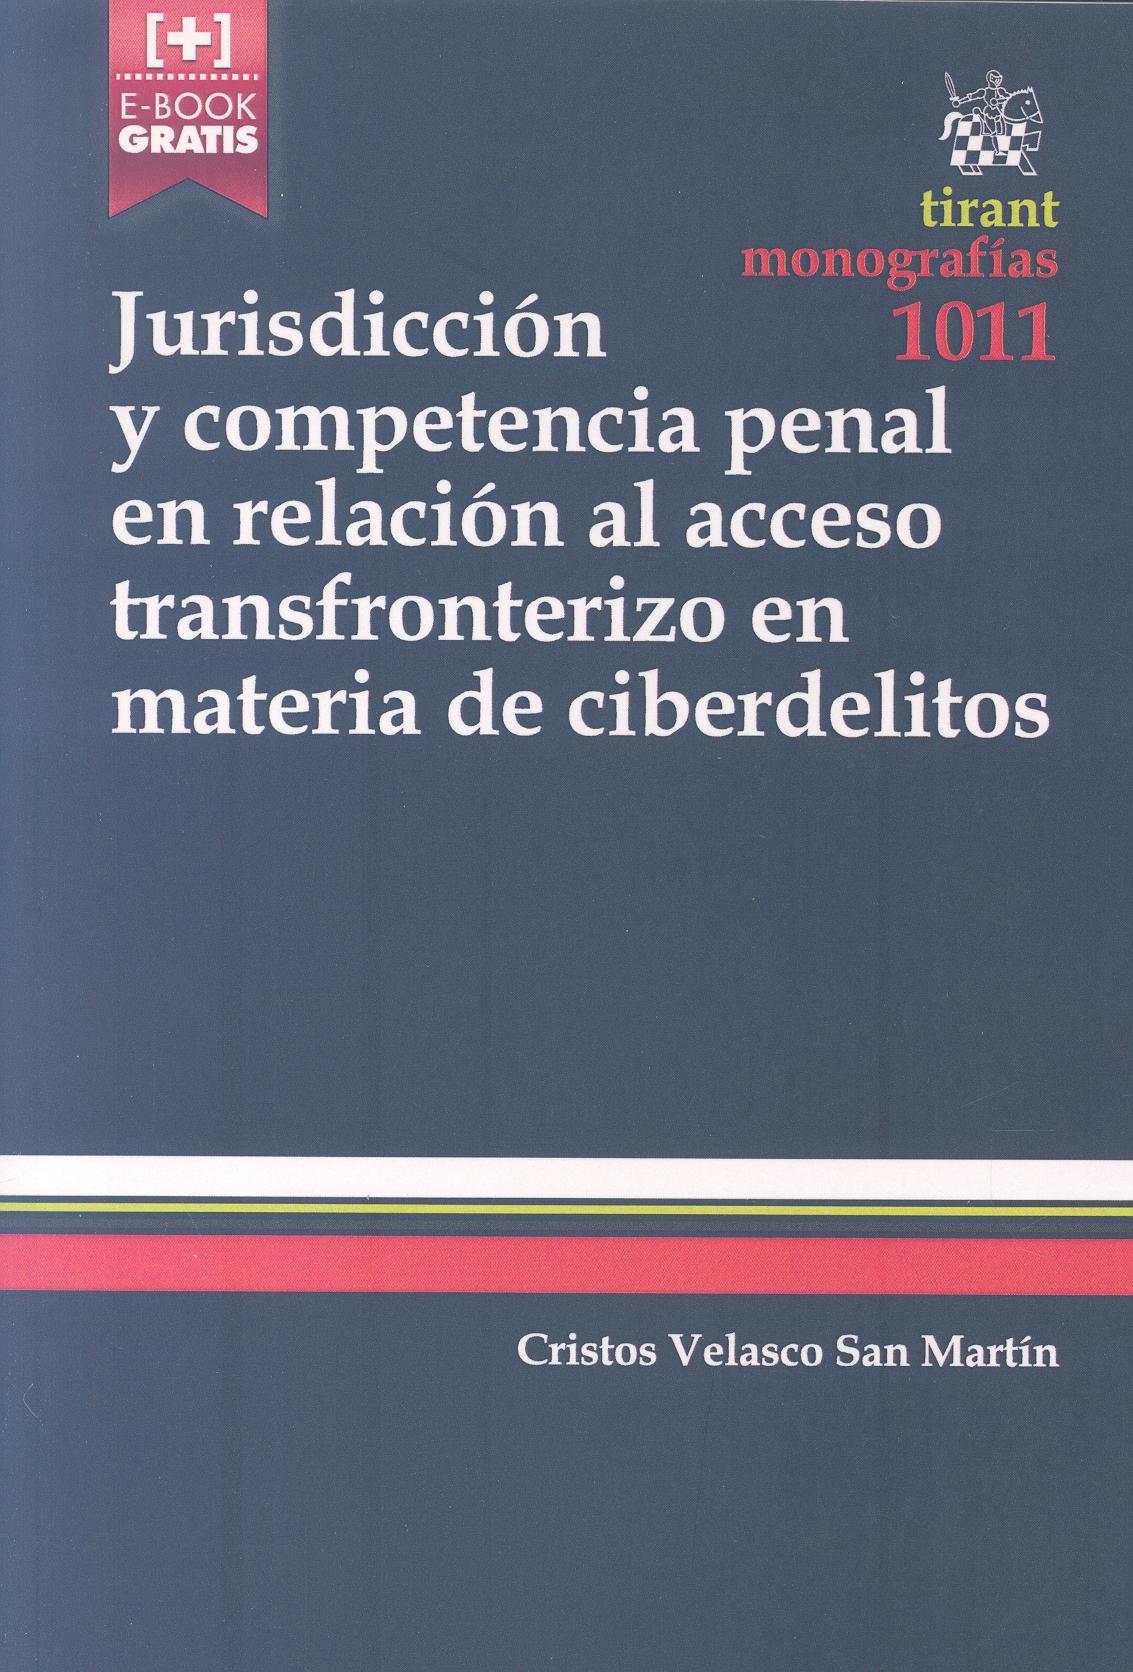 9788490869925 Jurisdicción Y Competencia Penal En Relación Al Acceso Transfronterizo En Materia De Ciberdelitos. # 1011